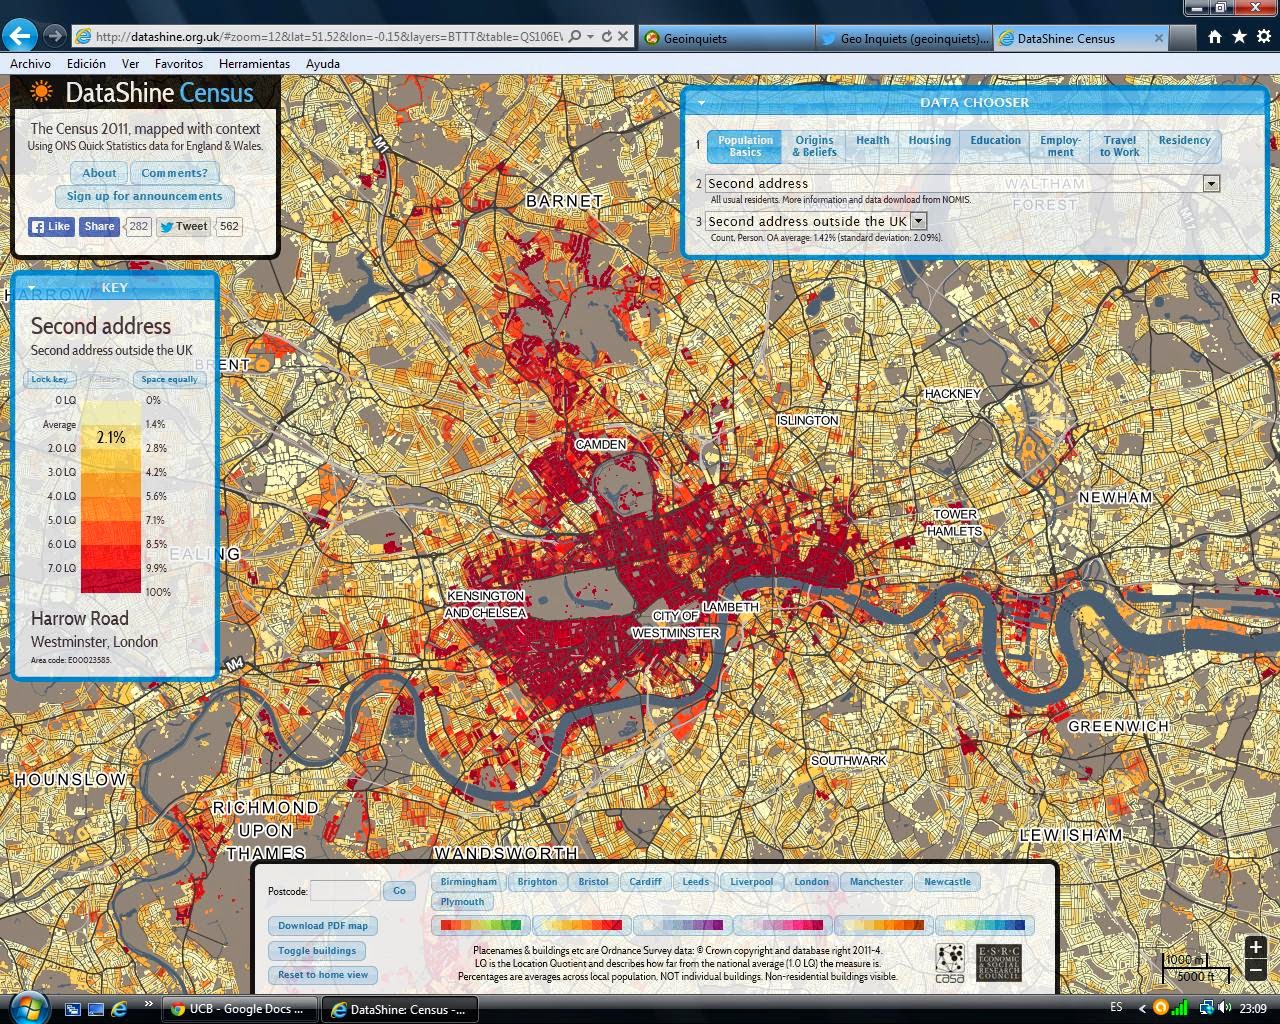 Mapa del dia: Mapa interactiu sobre les dades del cens de 2011 d’Anglaterra